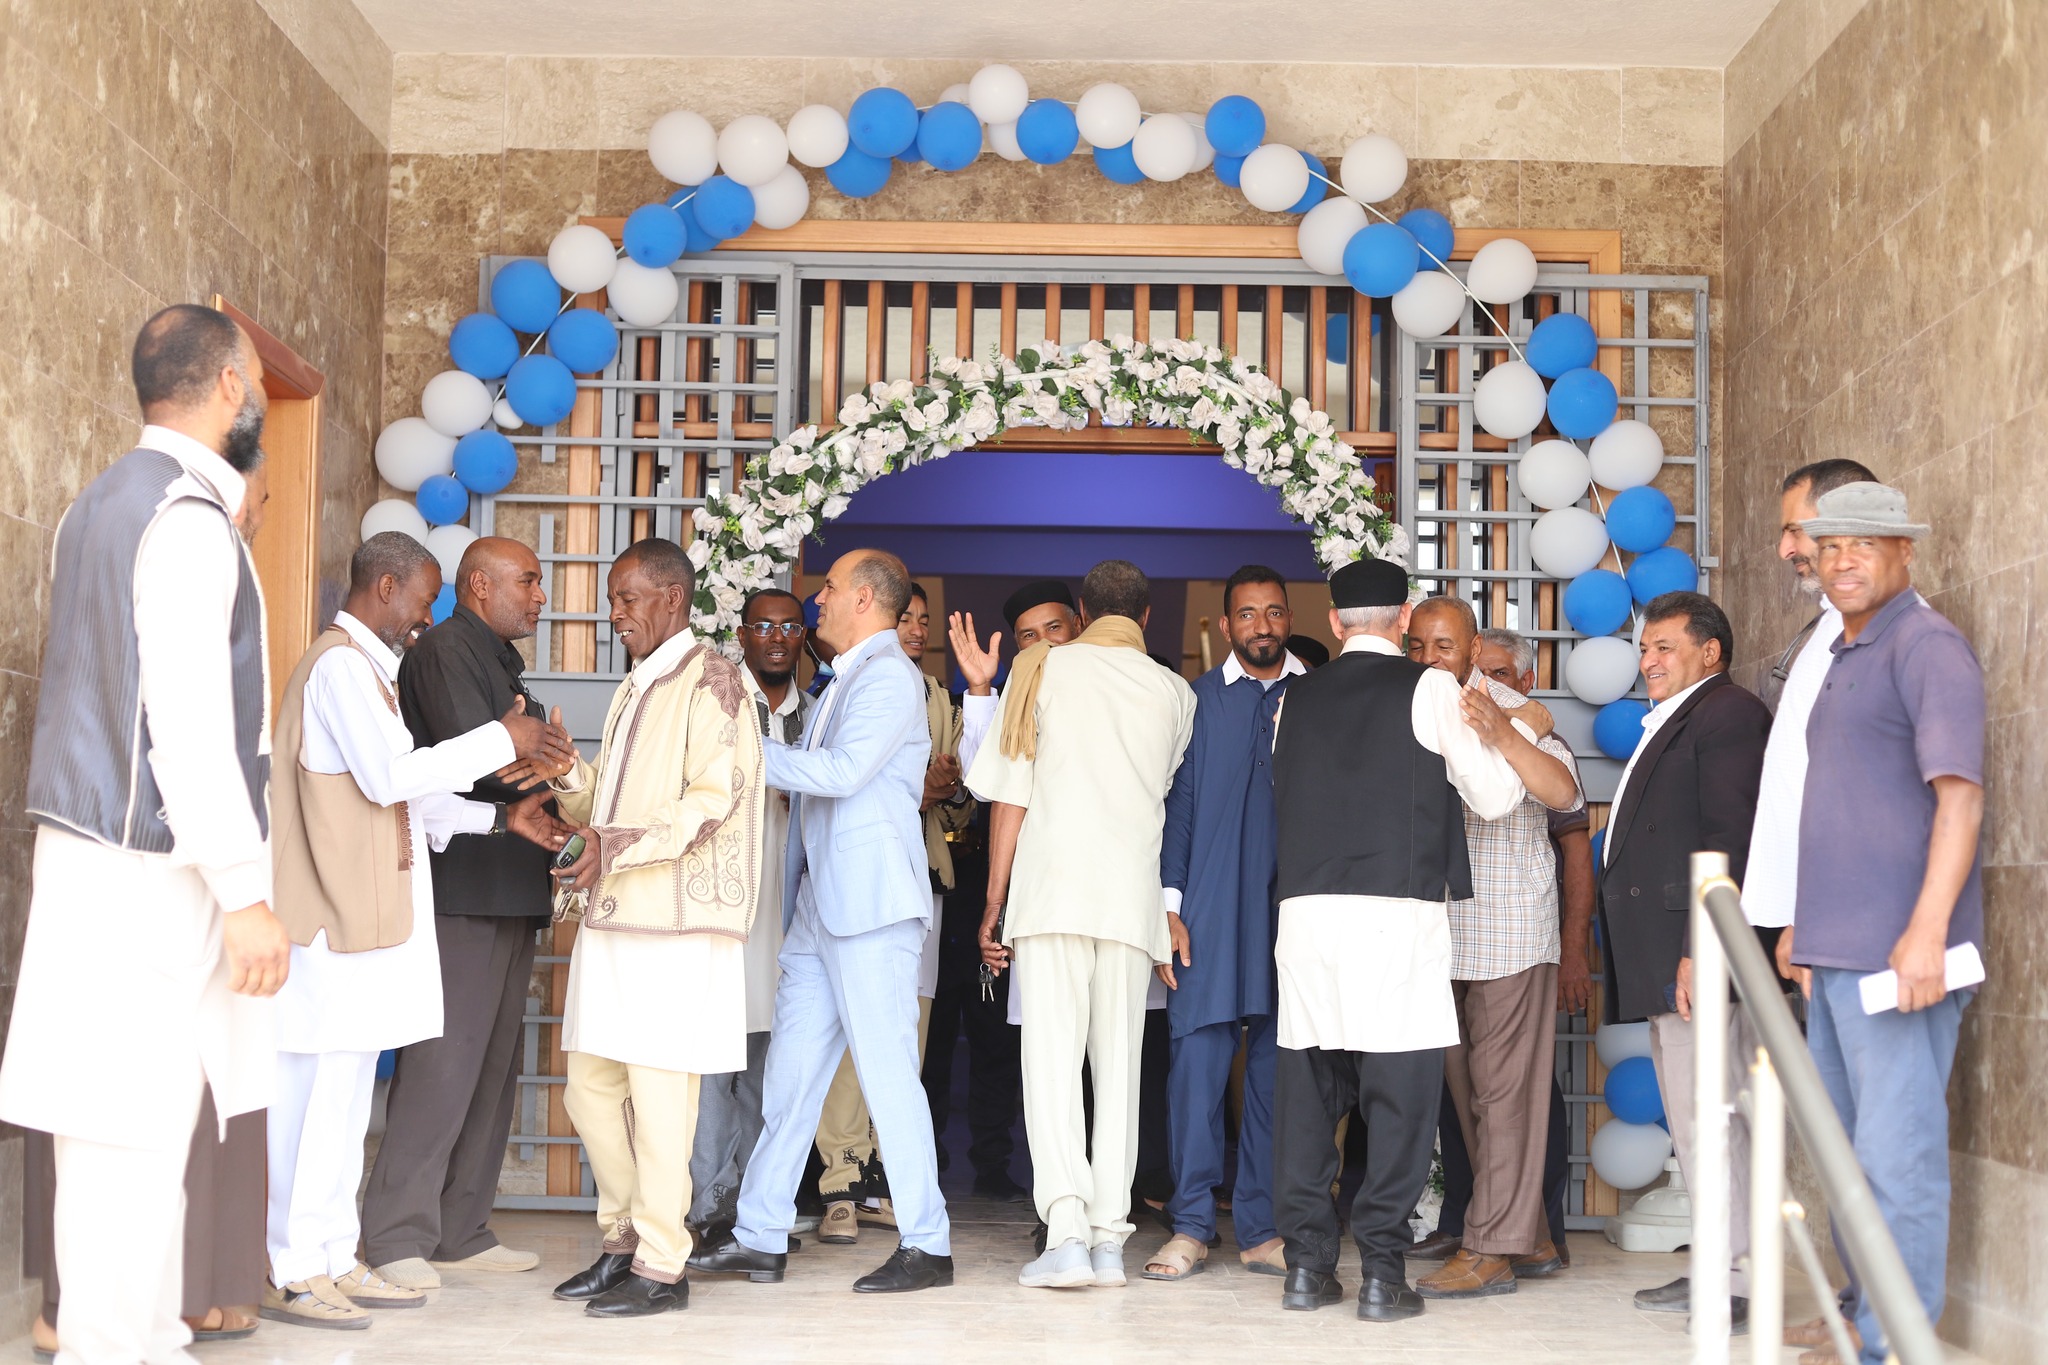 احتفالية بجامعة وادي الشاطئ بمناسبة افتتاح مبنى الإدارة العامة للجامعة بعد الانتهاء من صيانته.